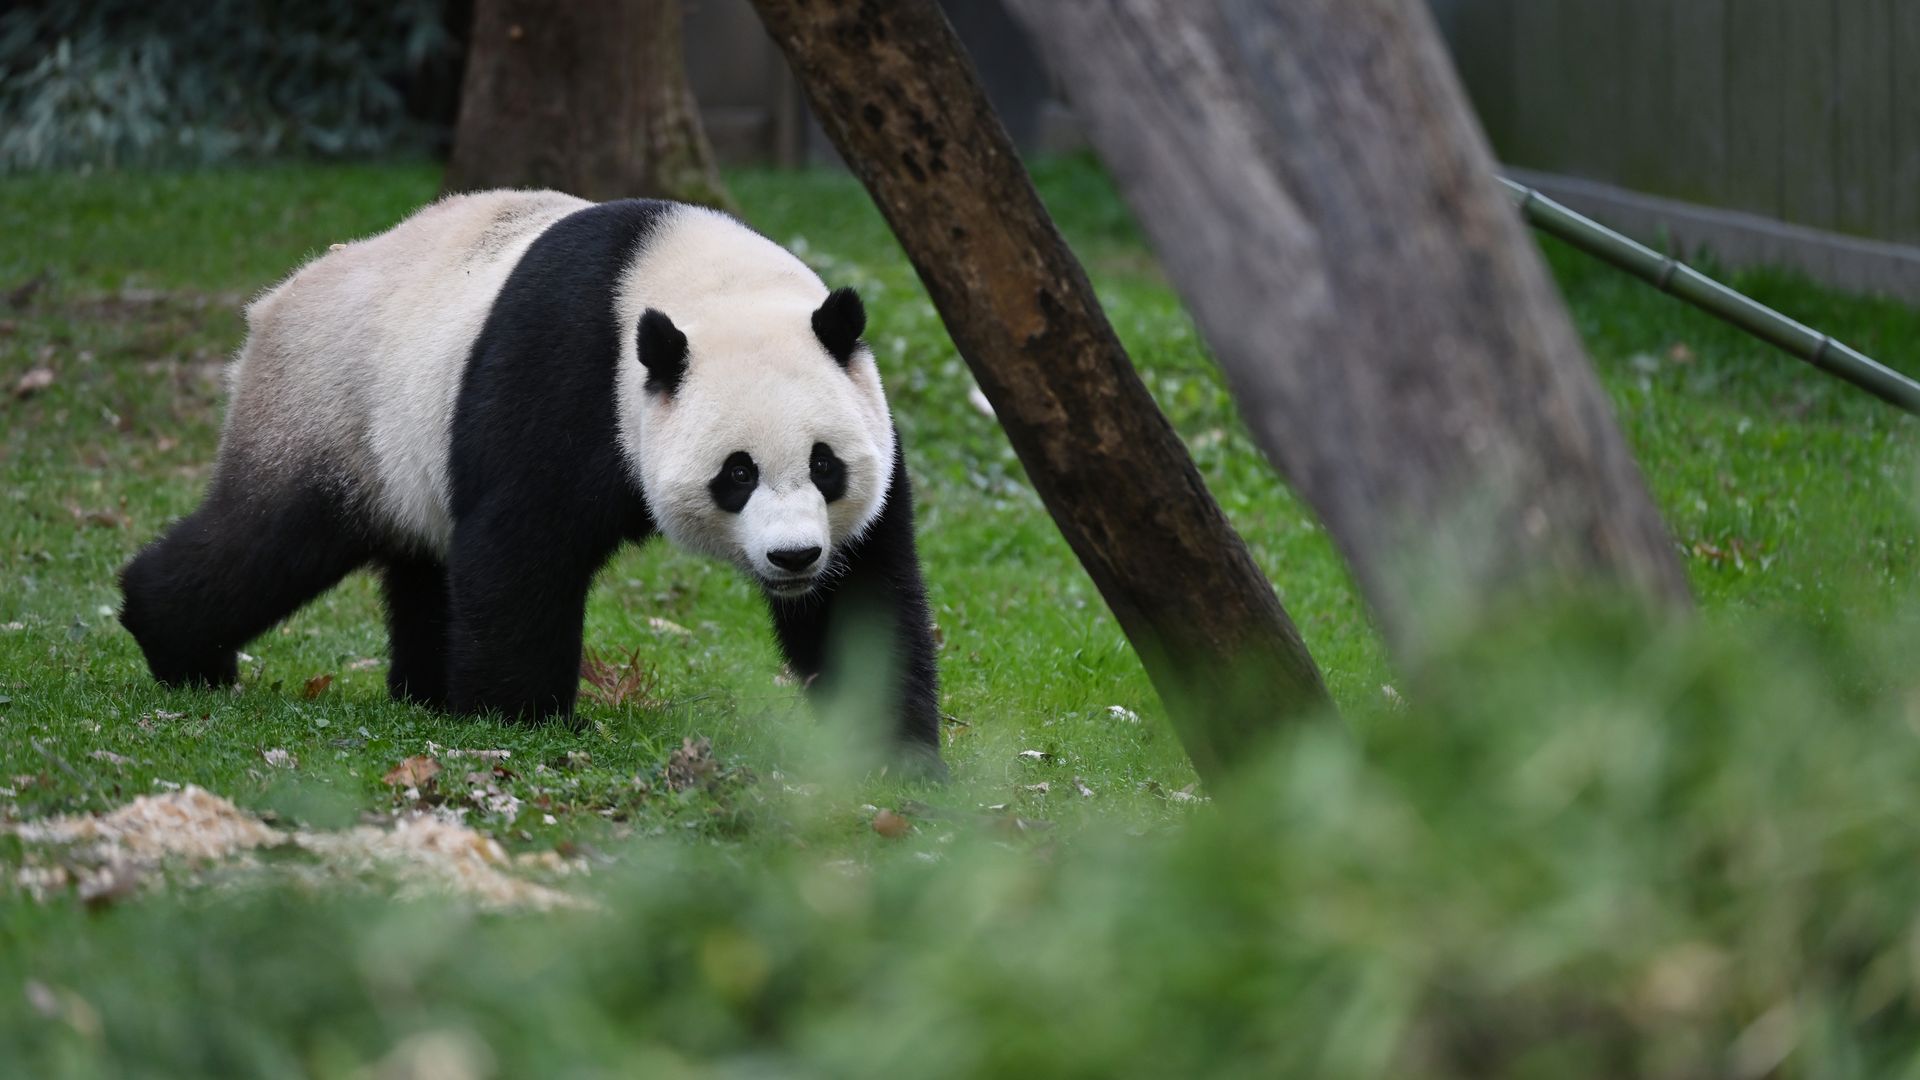 Surprise! Giant pandas may return to San Diego - The San Diego